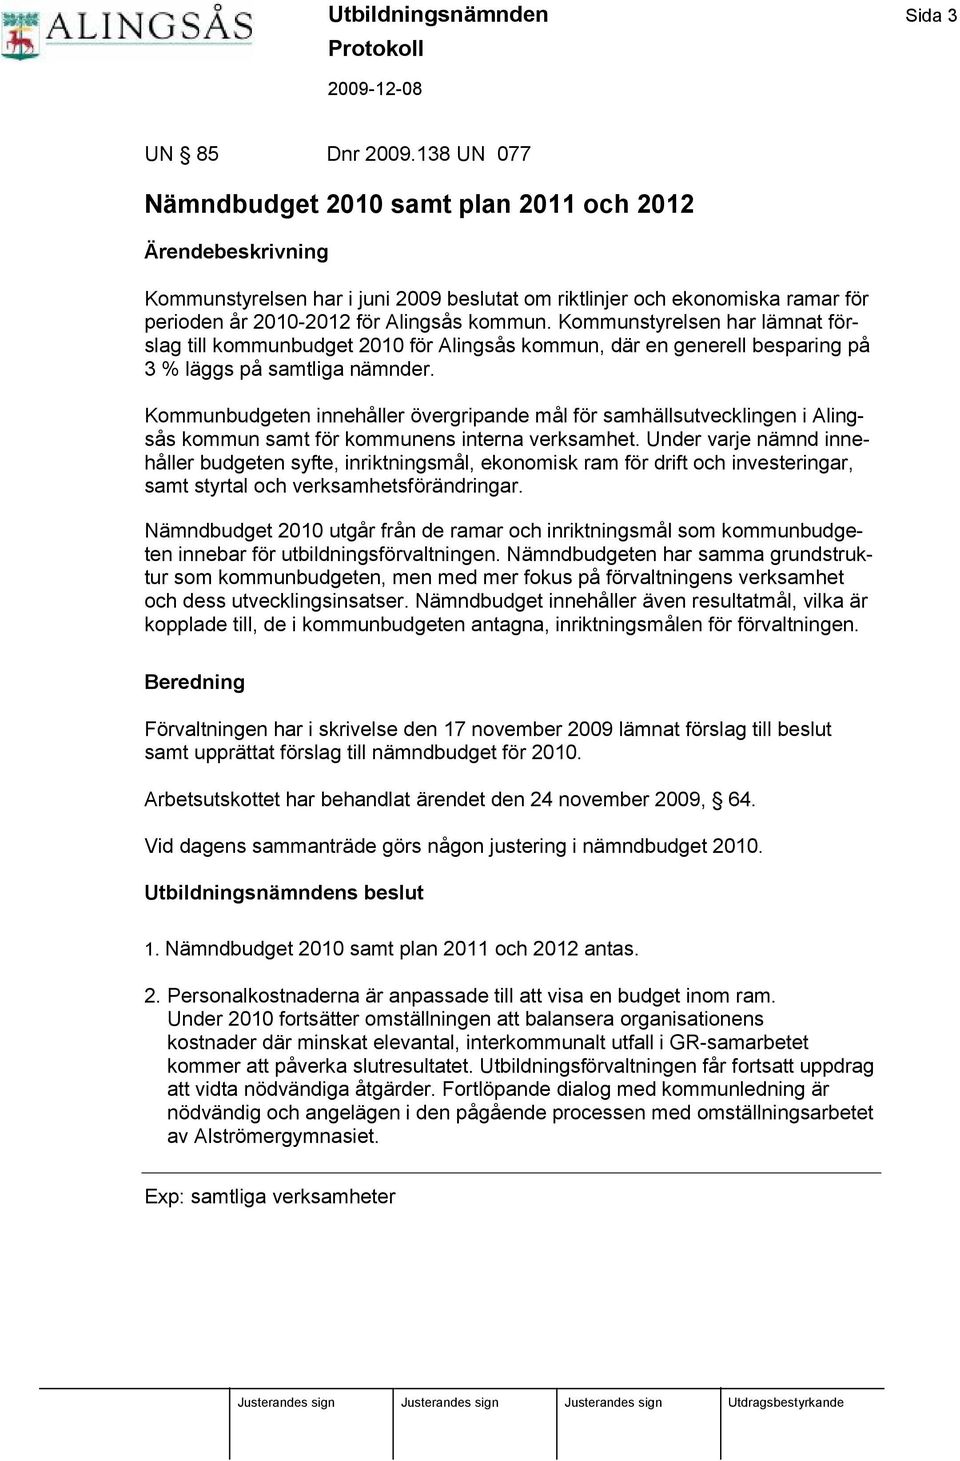 Kommunstyrelsen har lä mnat förslag till kommunbudget 2010 för Alingsås kommun, dä r en generell besparing på 3 % lä ggs på samtliga nä mnder.